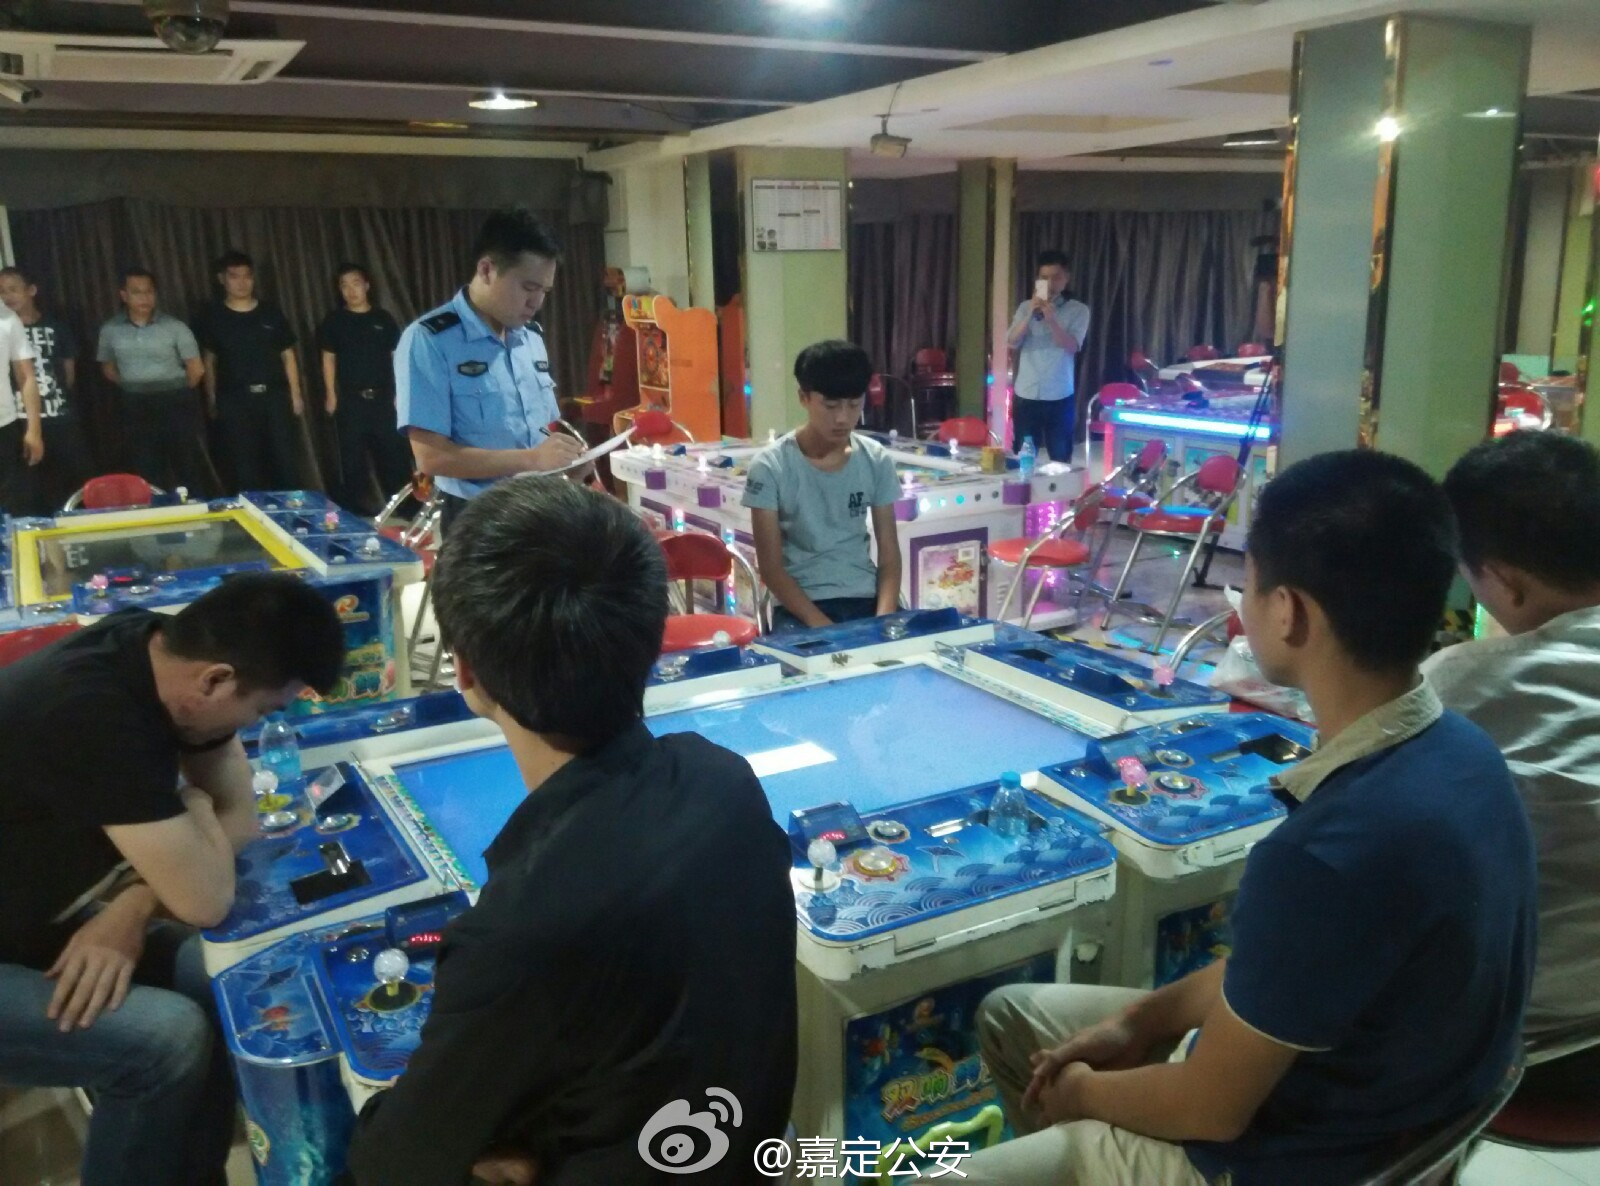 上海万达广场3家赌场 随便玩玩可输几十万